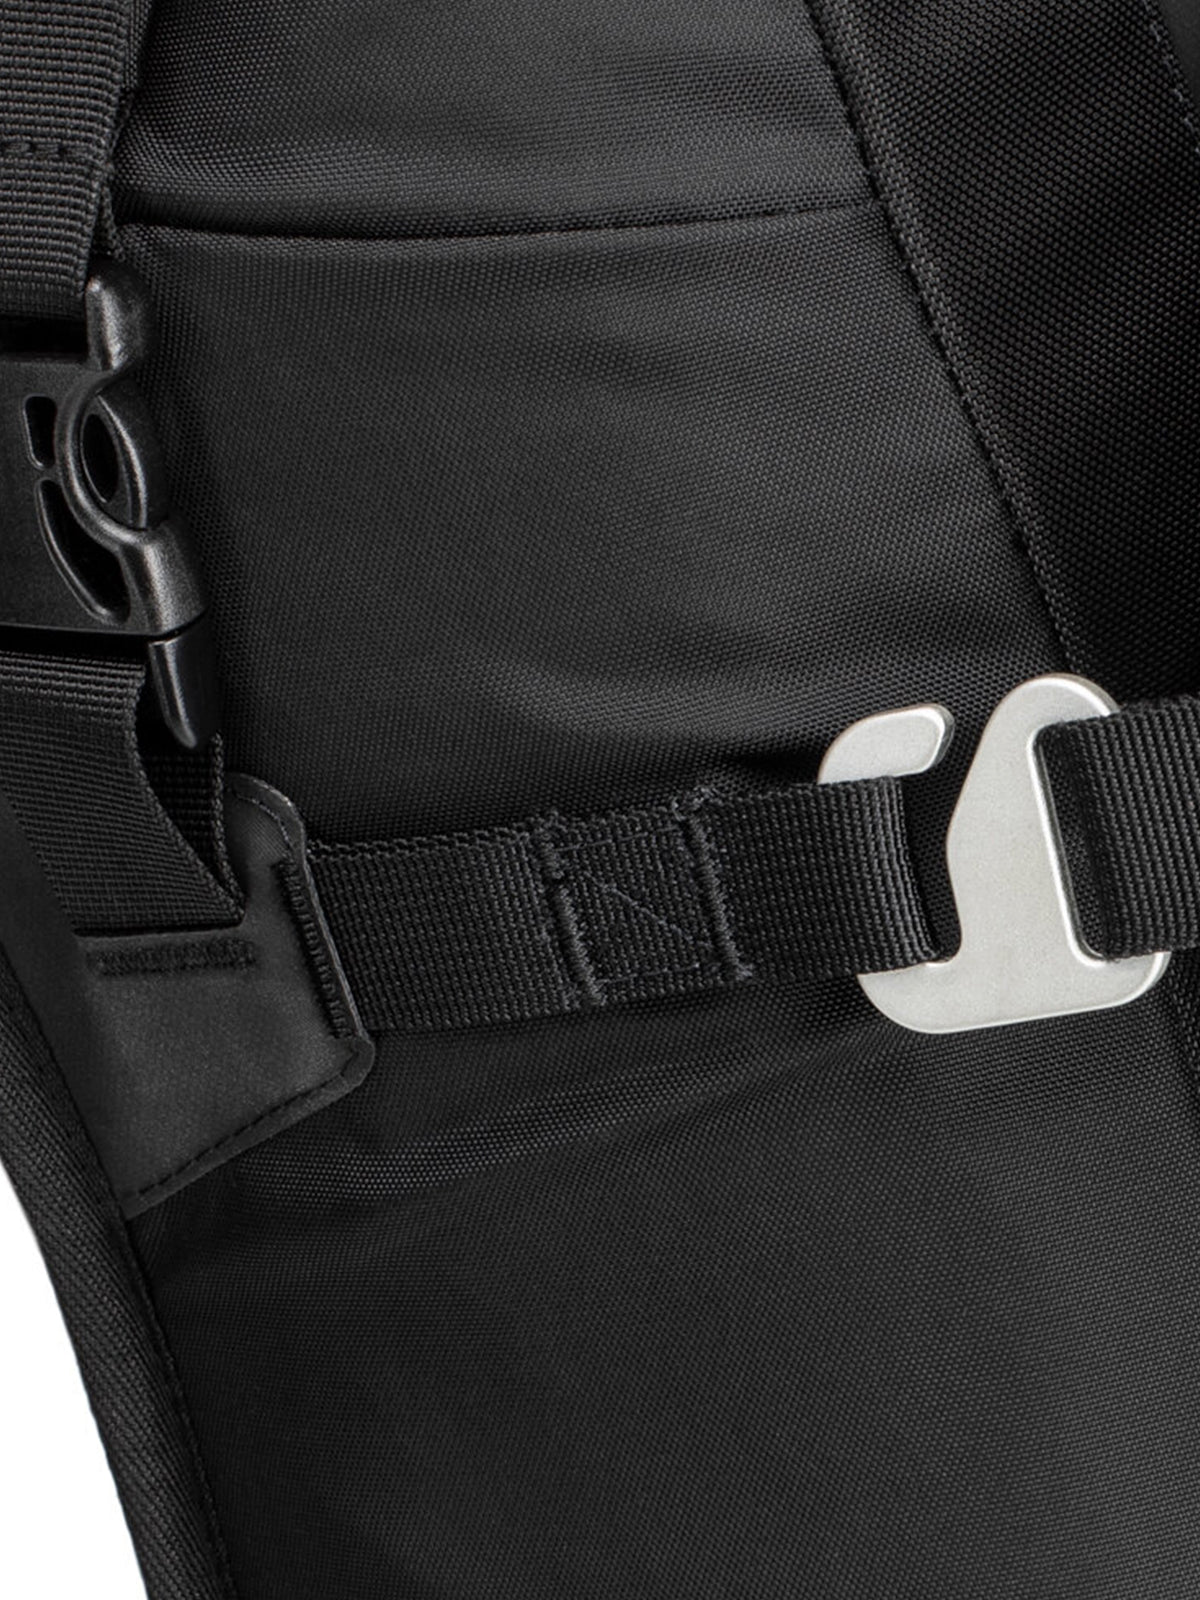 Kriega R16 Backpack hook system